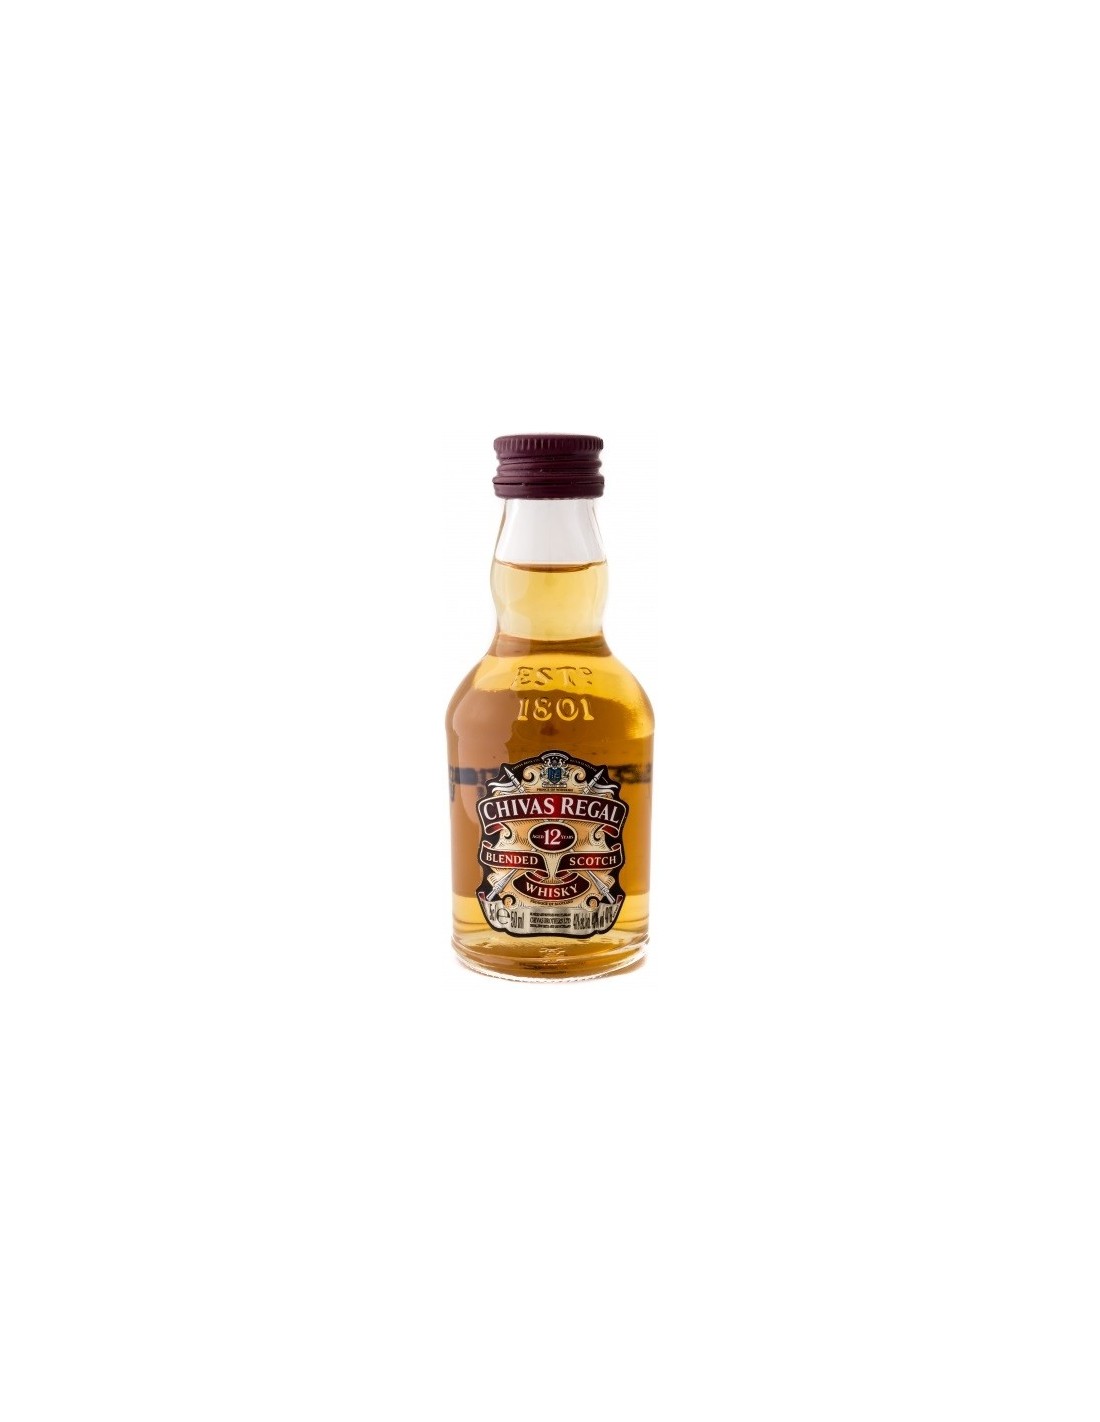 Acheter du Whisky Chivas Regal 12 ans 70cl vendu en Etui sur notre site -  Odyssee-vins